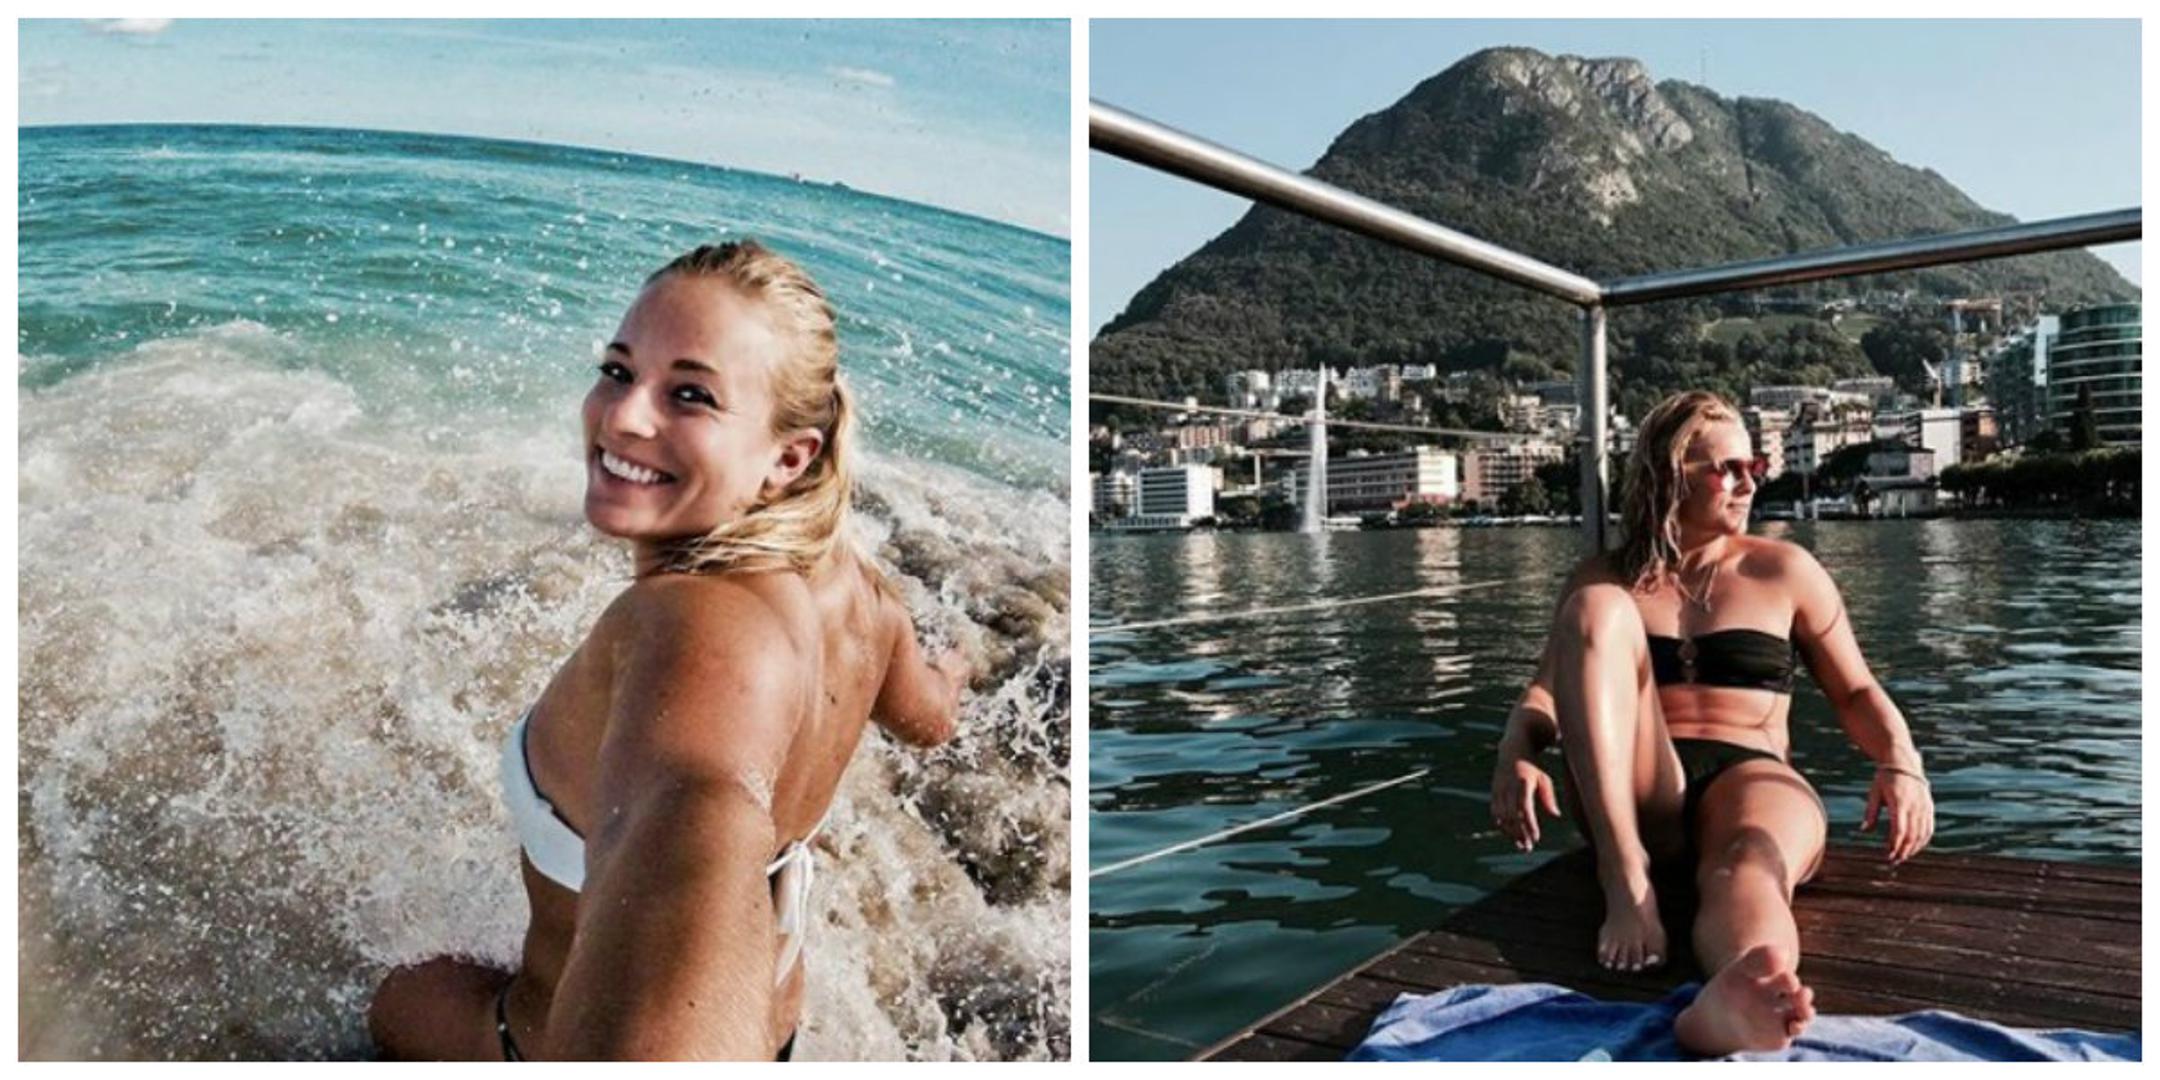 Švicarska skijašica Lara Gut na društvenim mrežama otkrila je da ljubi sunarodnjaka - nogometaša Valona Behramija.